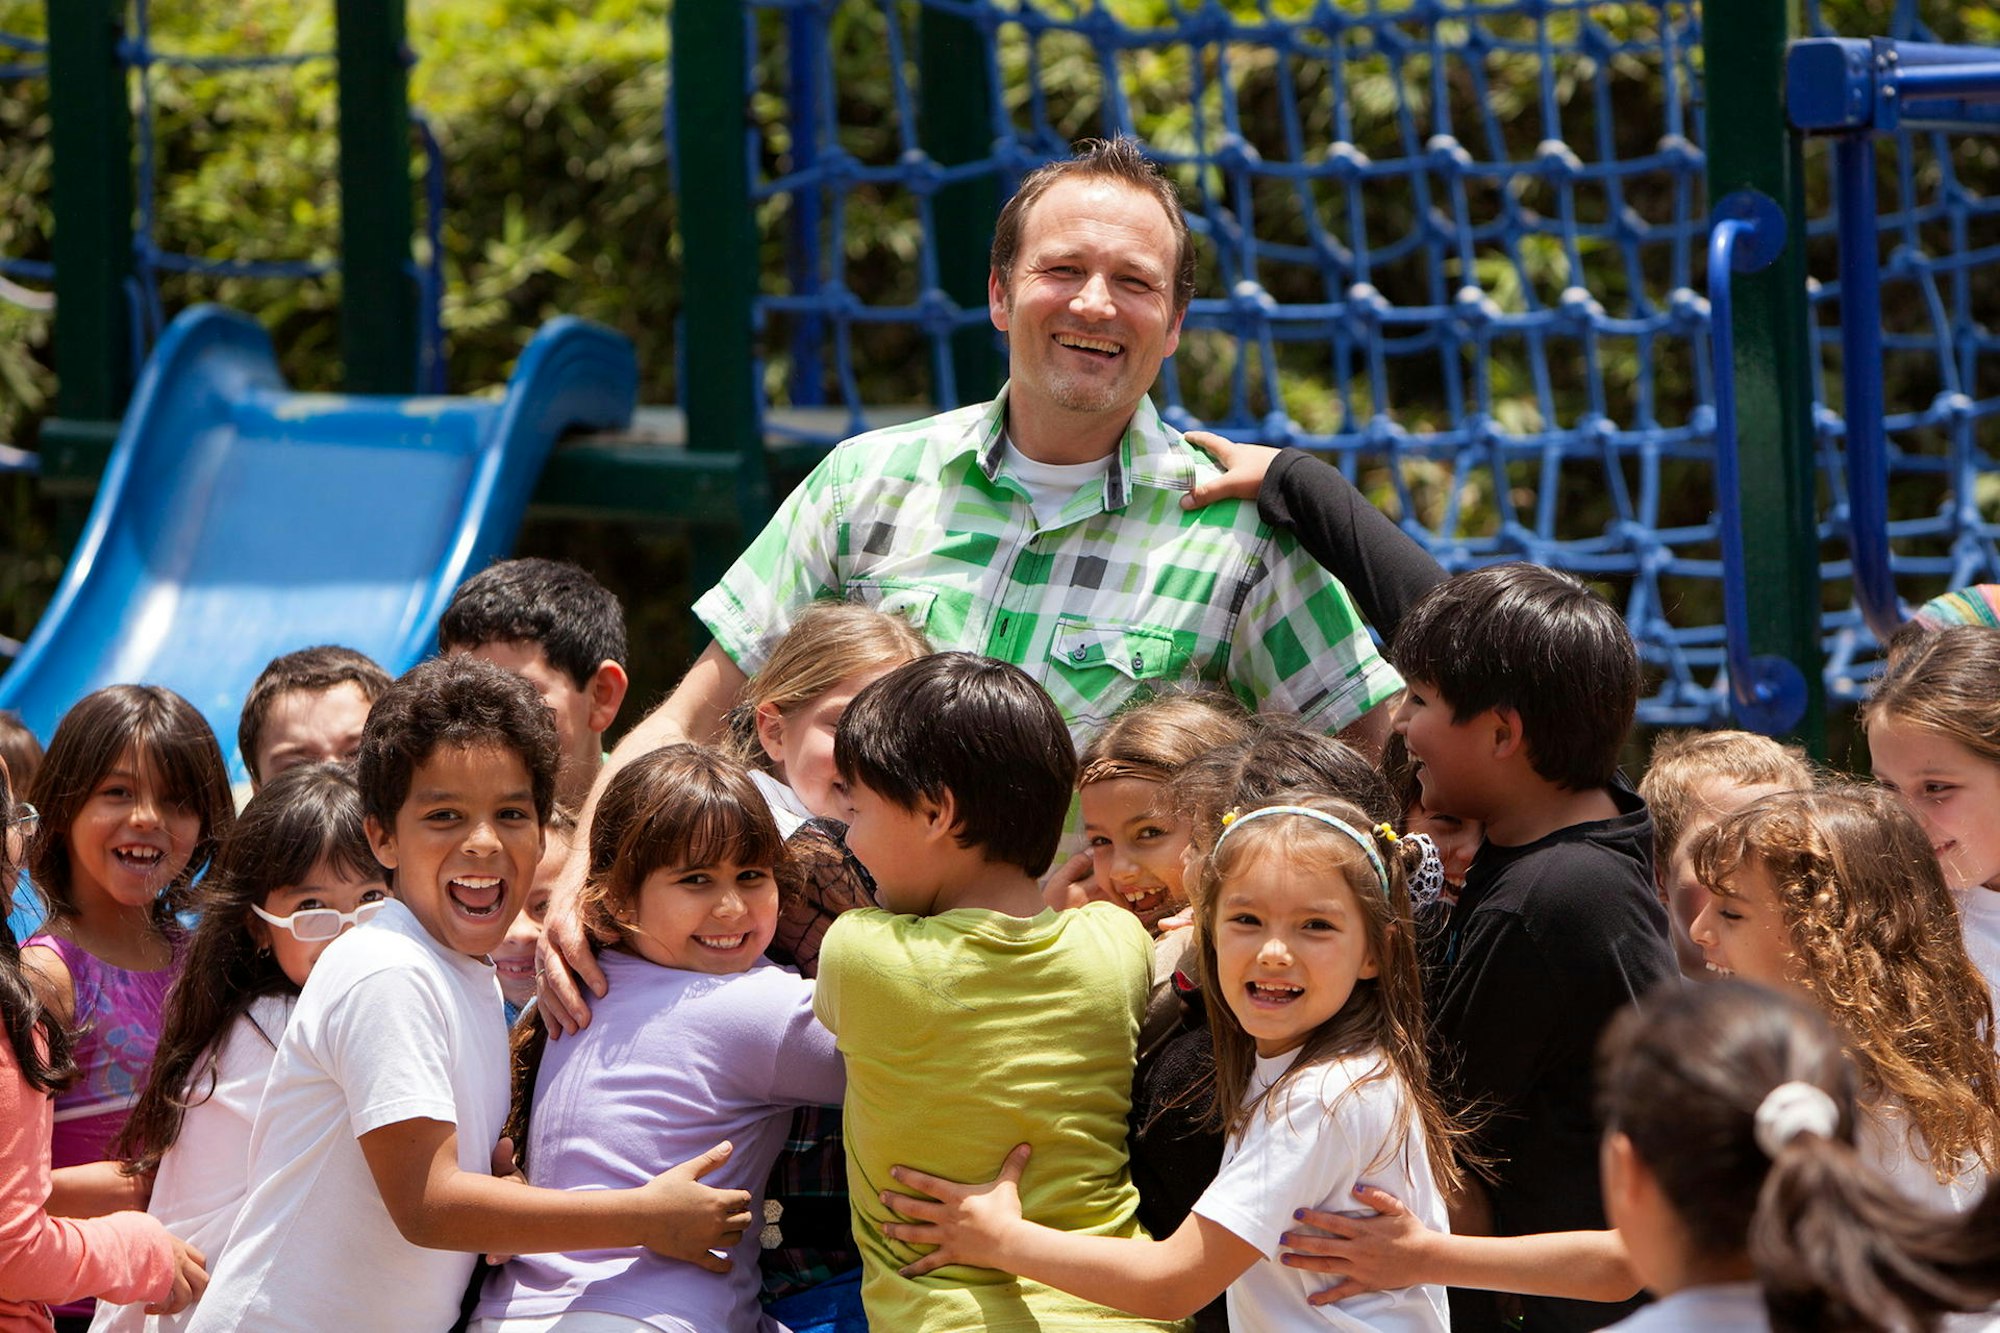 Viel Auslandserfahrung sammelte Jens Erner bereits als Schulleiter an einer deutschen Schule in Lima (Peru).